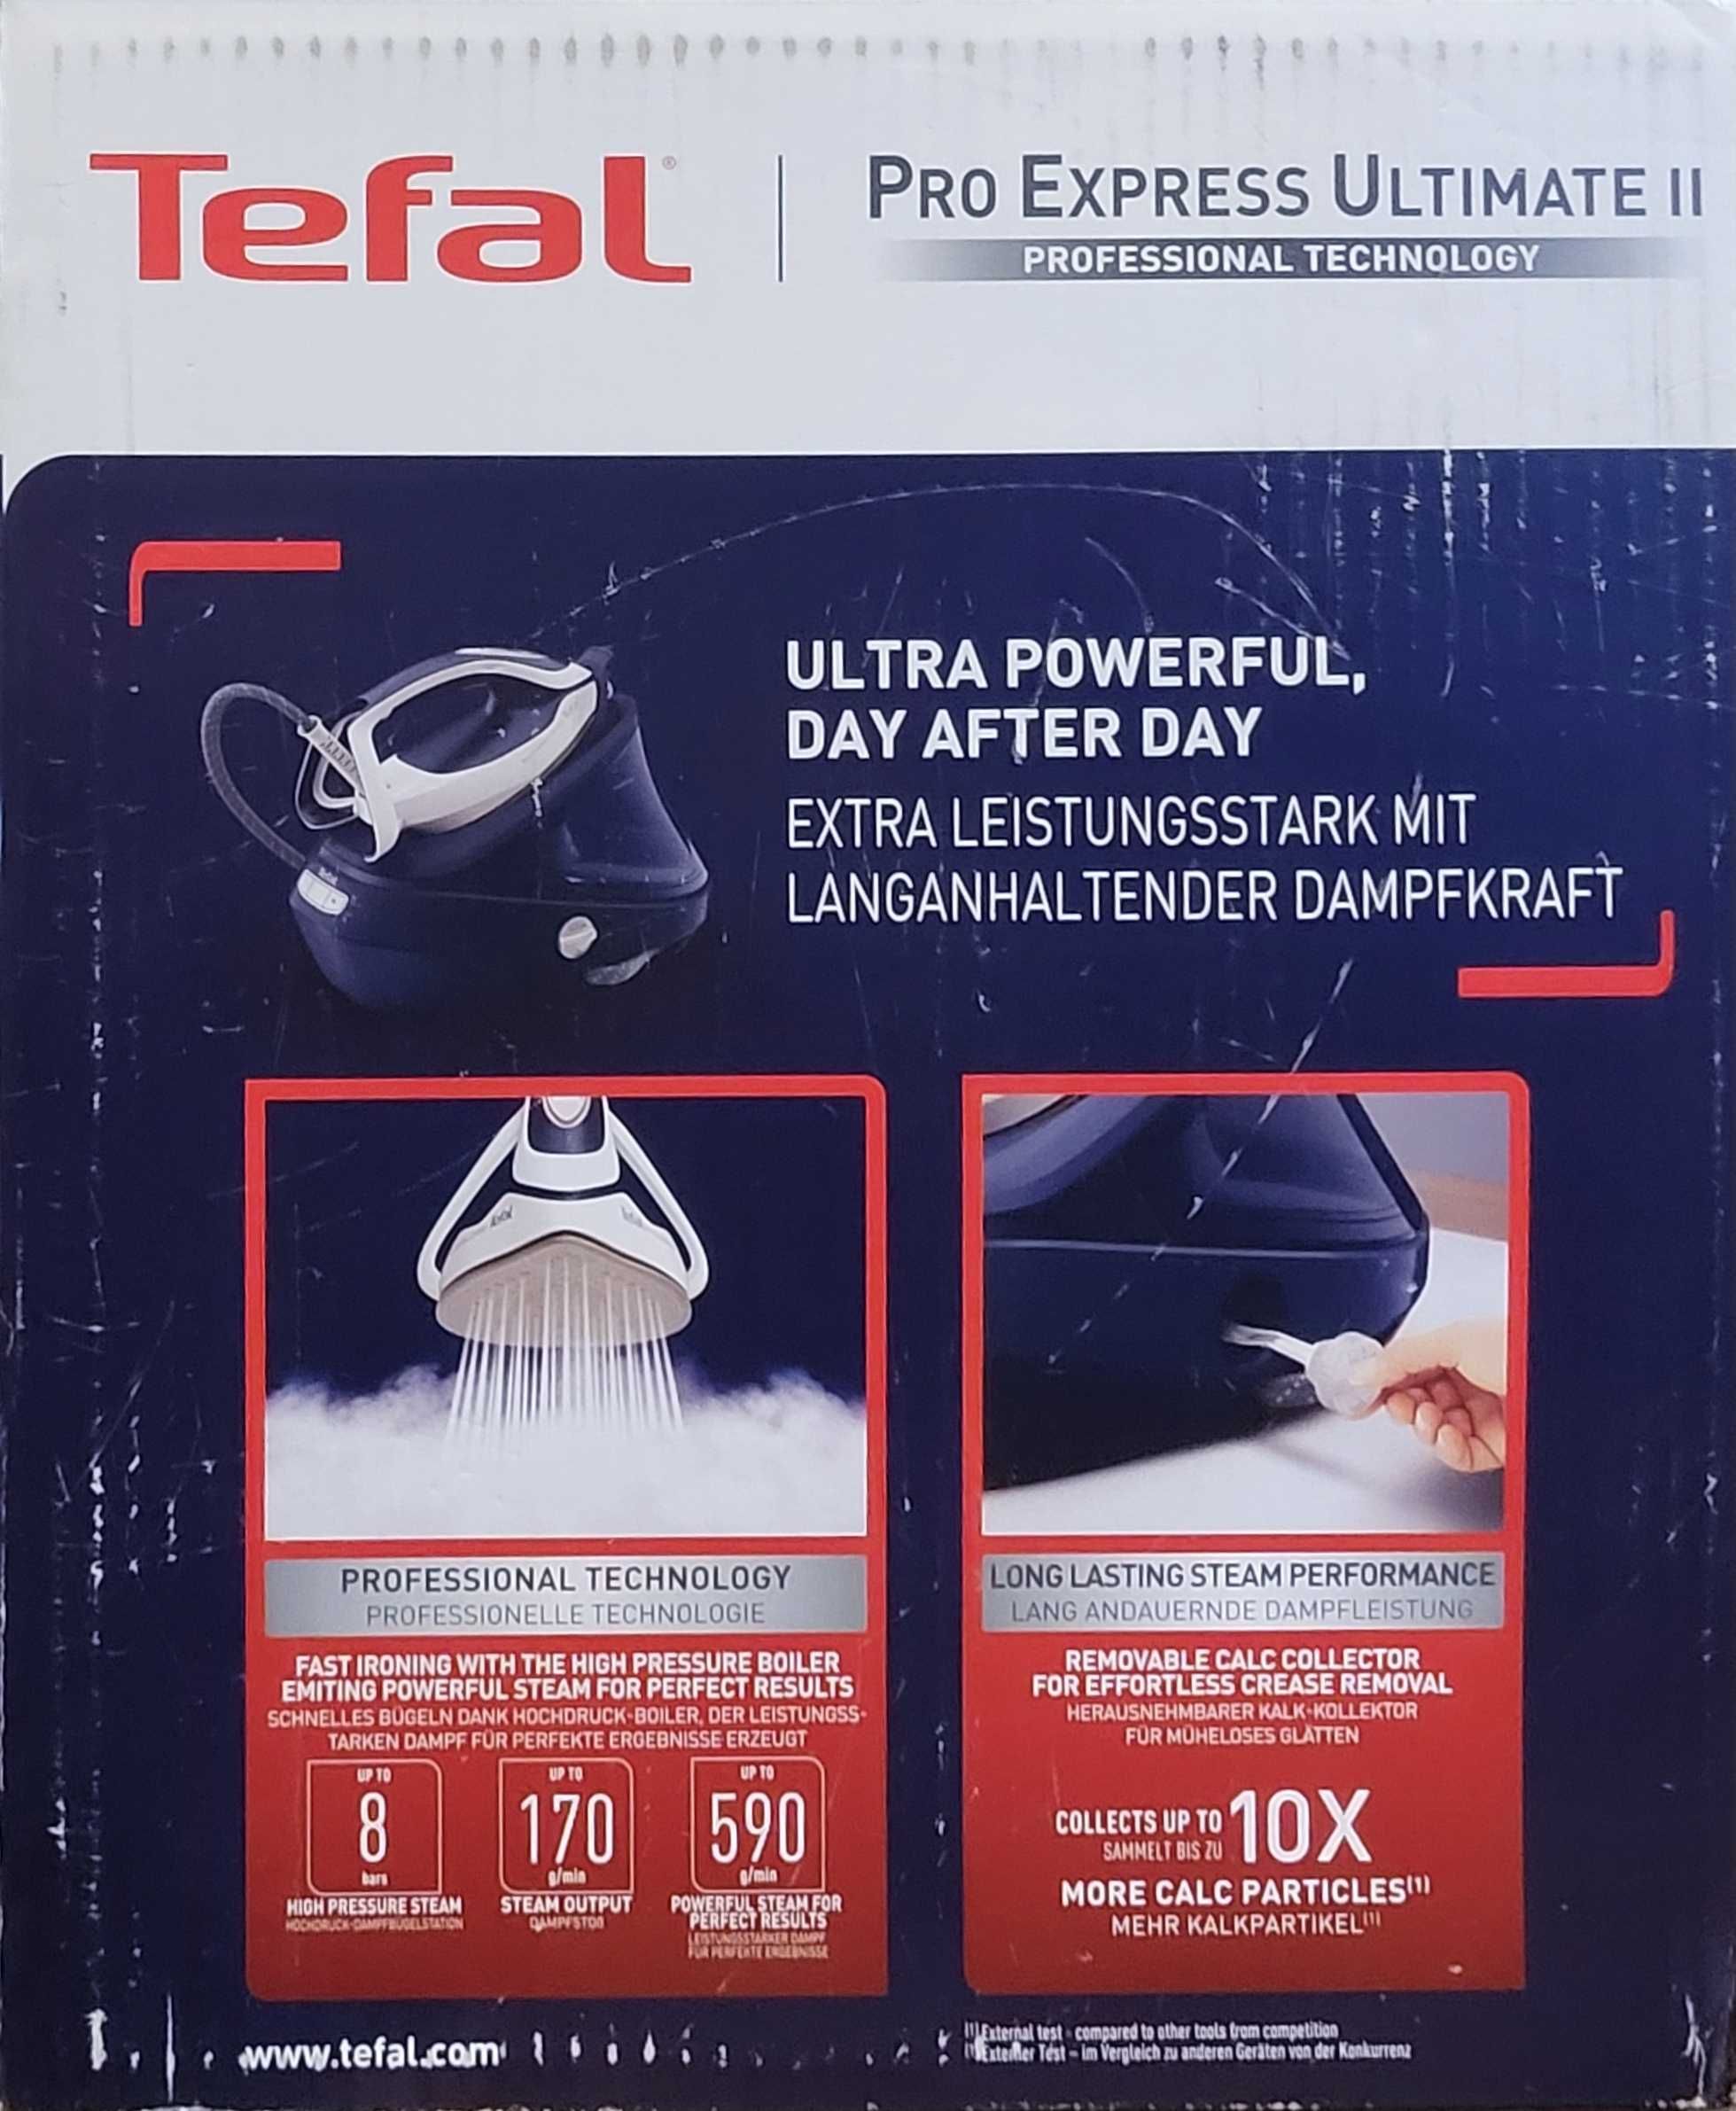 Statie de calcat cu boiler Tefal Pro Express Ultimate